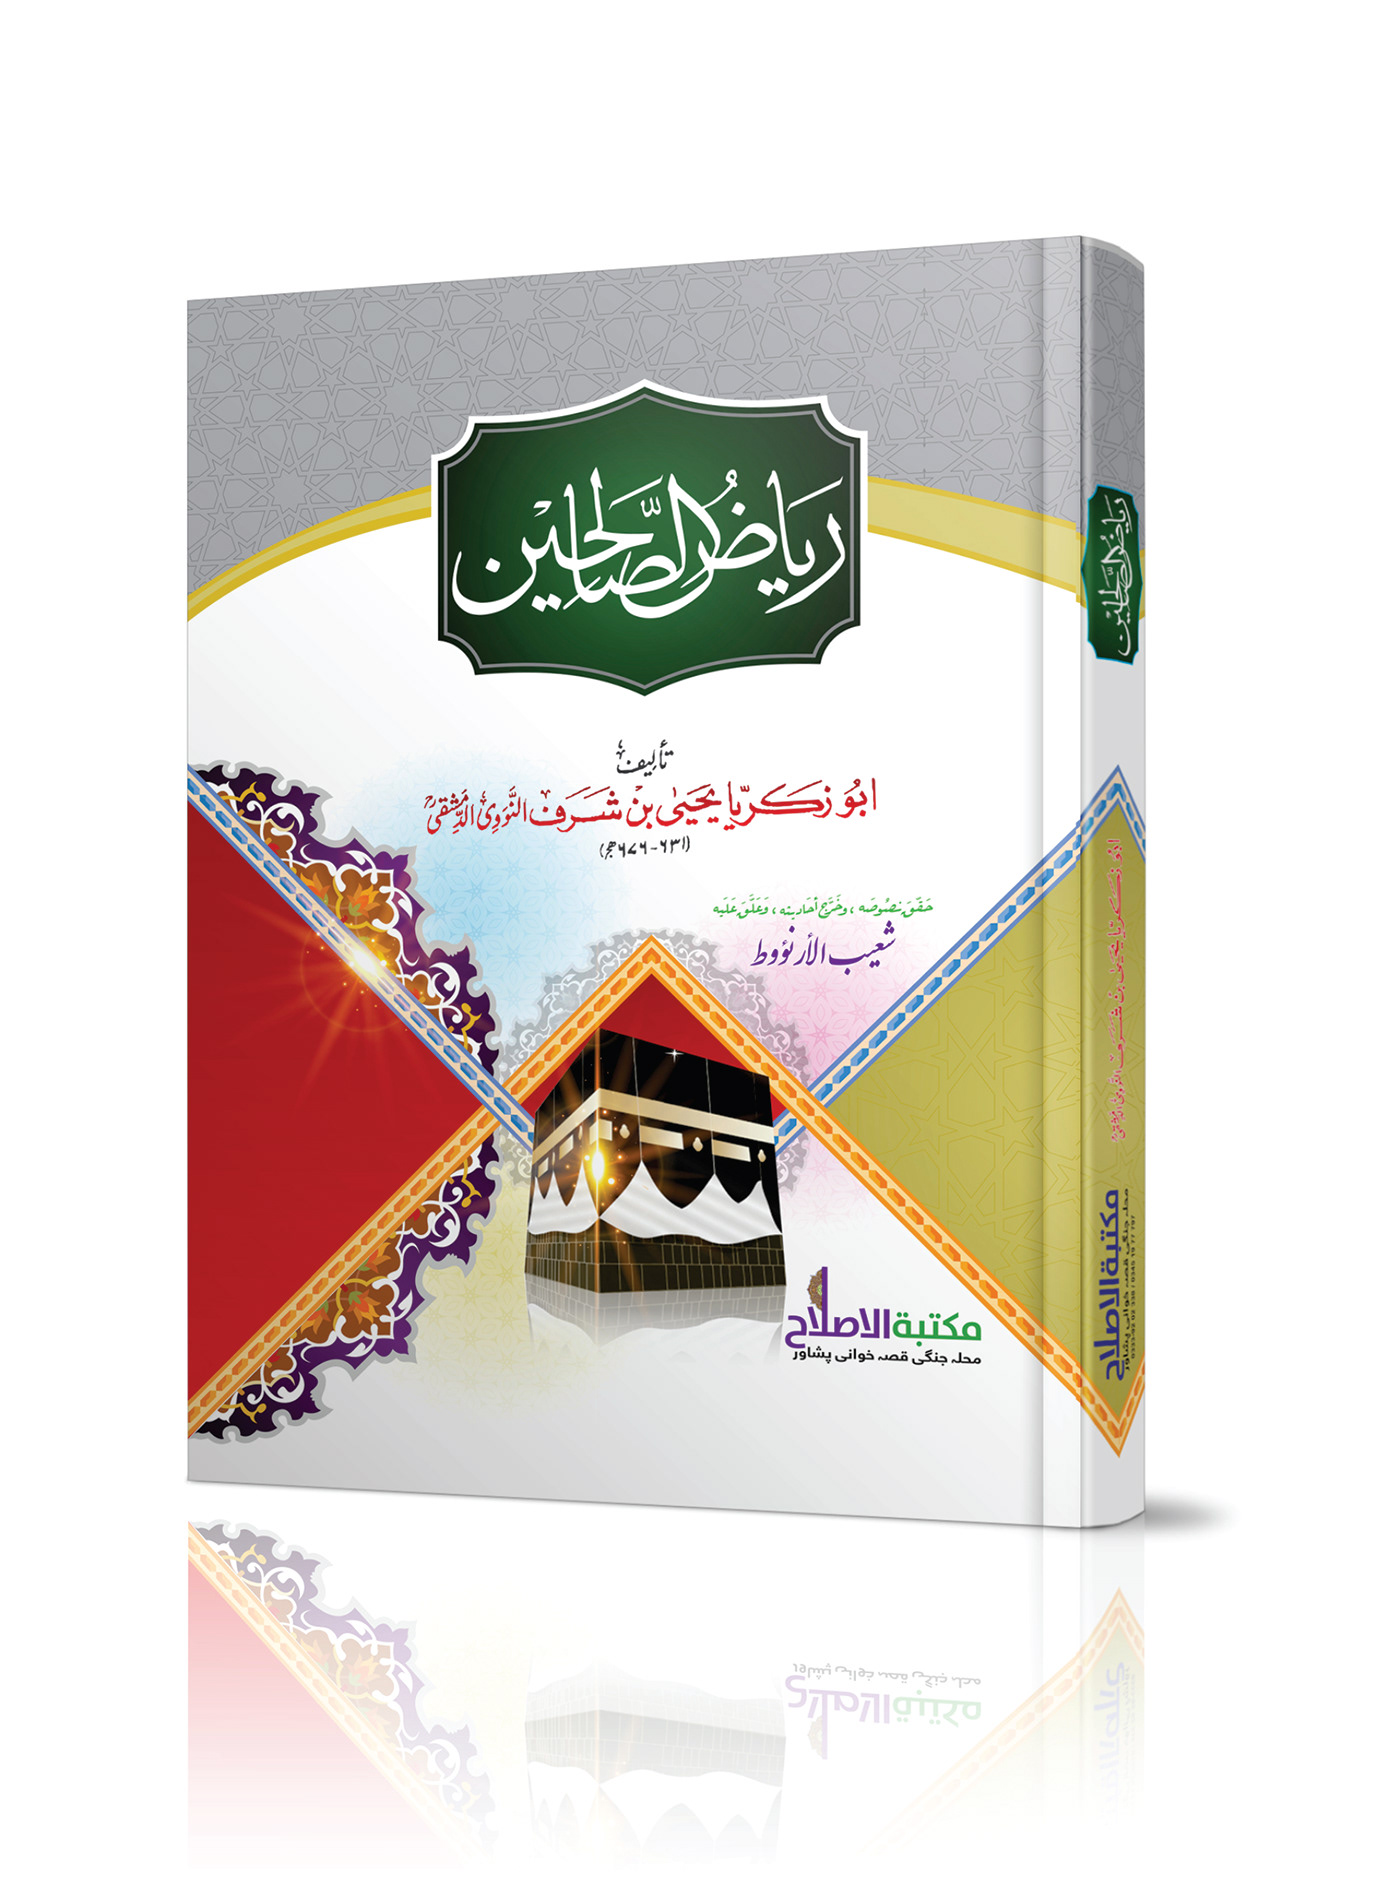 book book cover book design islamic book ocver logo noor printer persian logo psd background vector